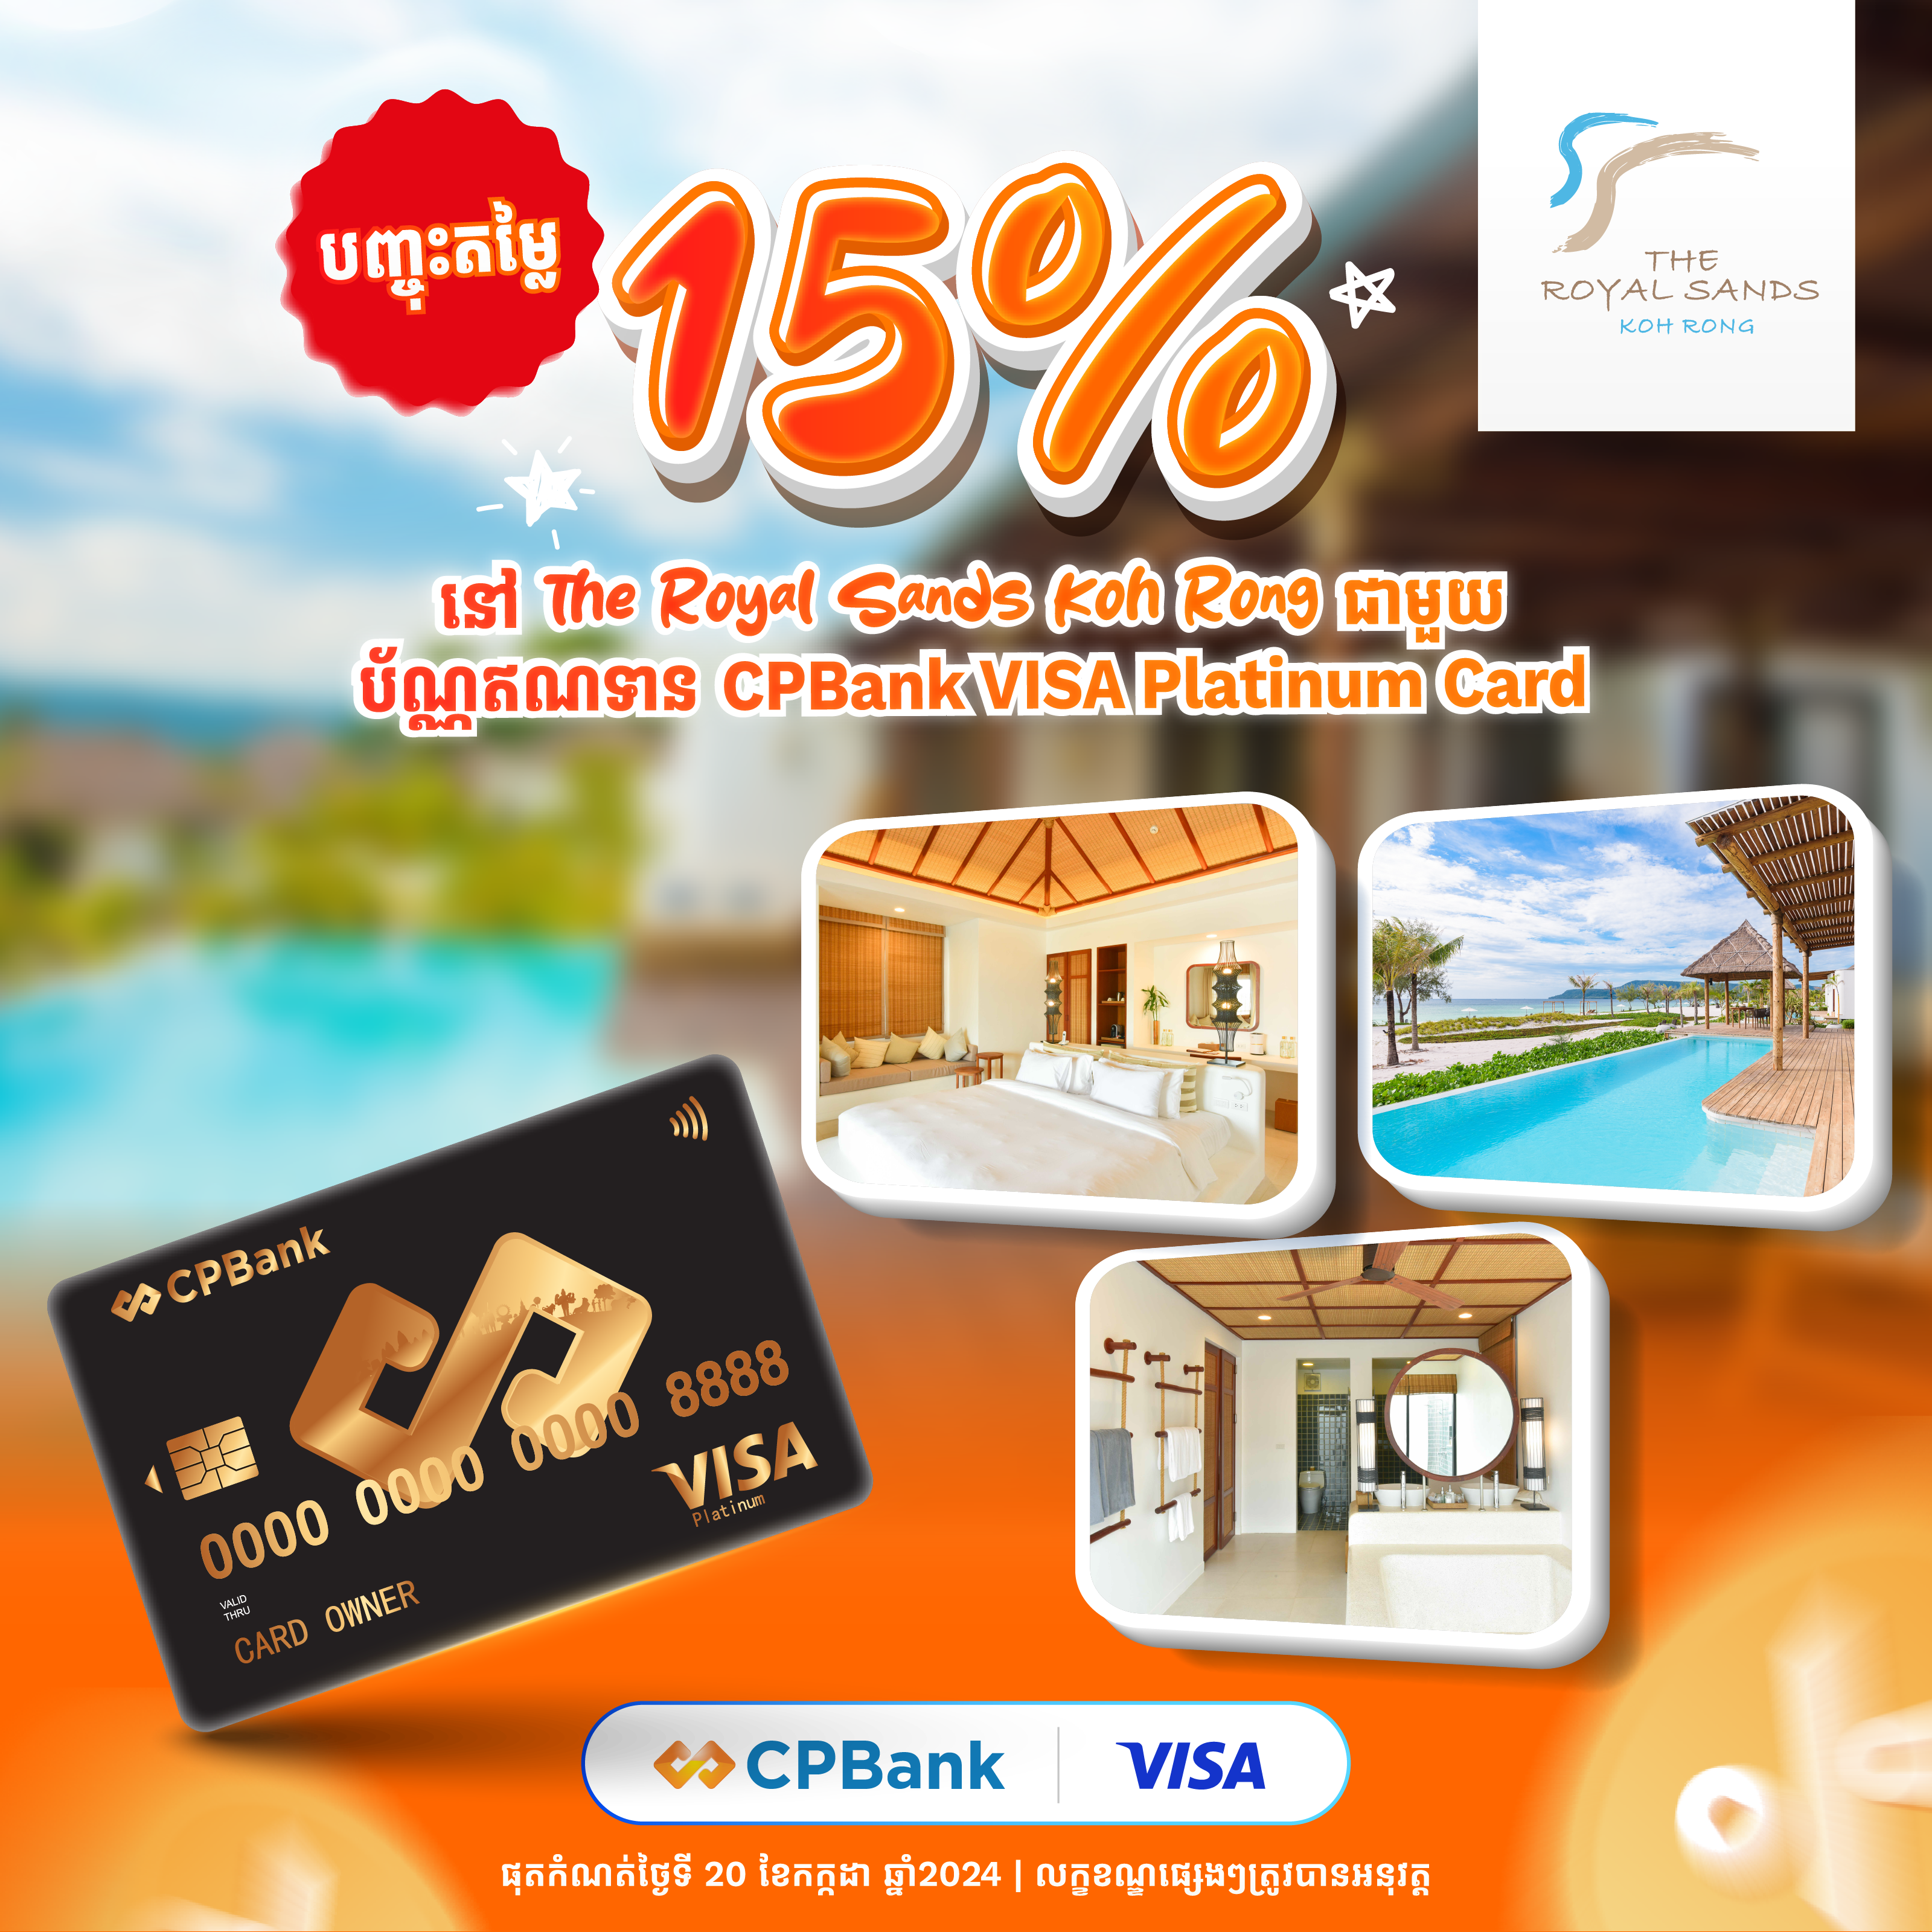 បញ្ចុះតម្លៃ 15% ពី The Royal Sands Koh Rong ជាមួយប័ណ្ណឥណទាន CPBank VISA​ Platinum​